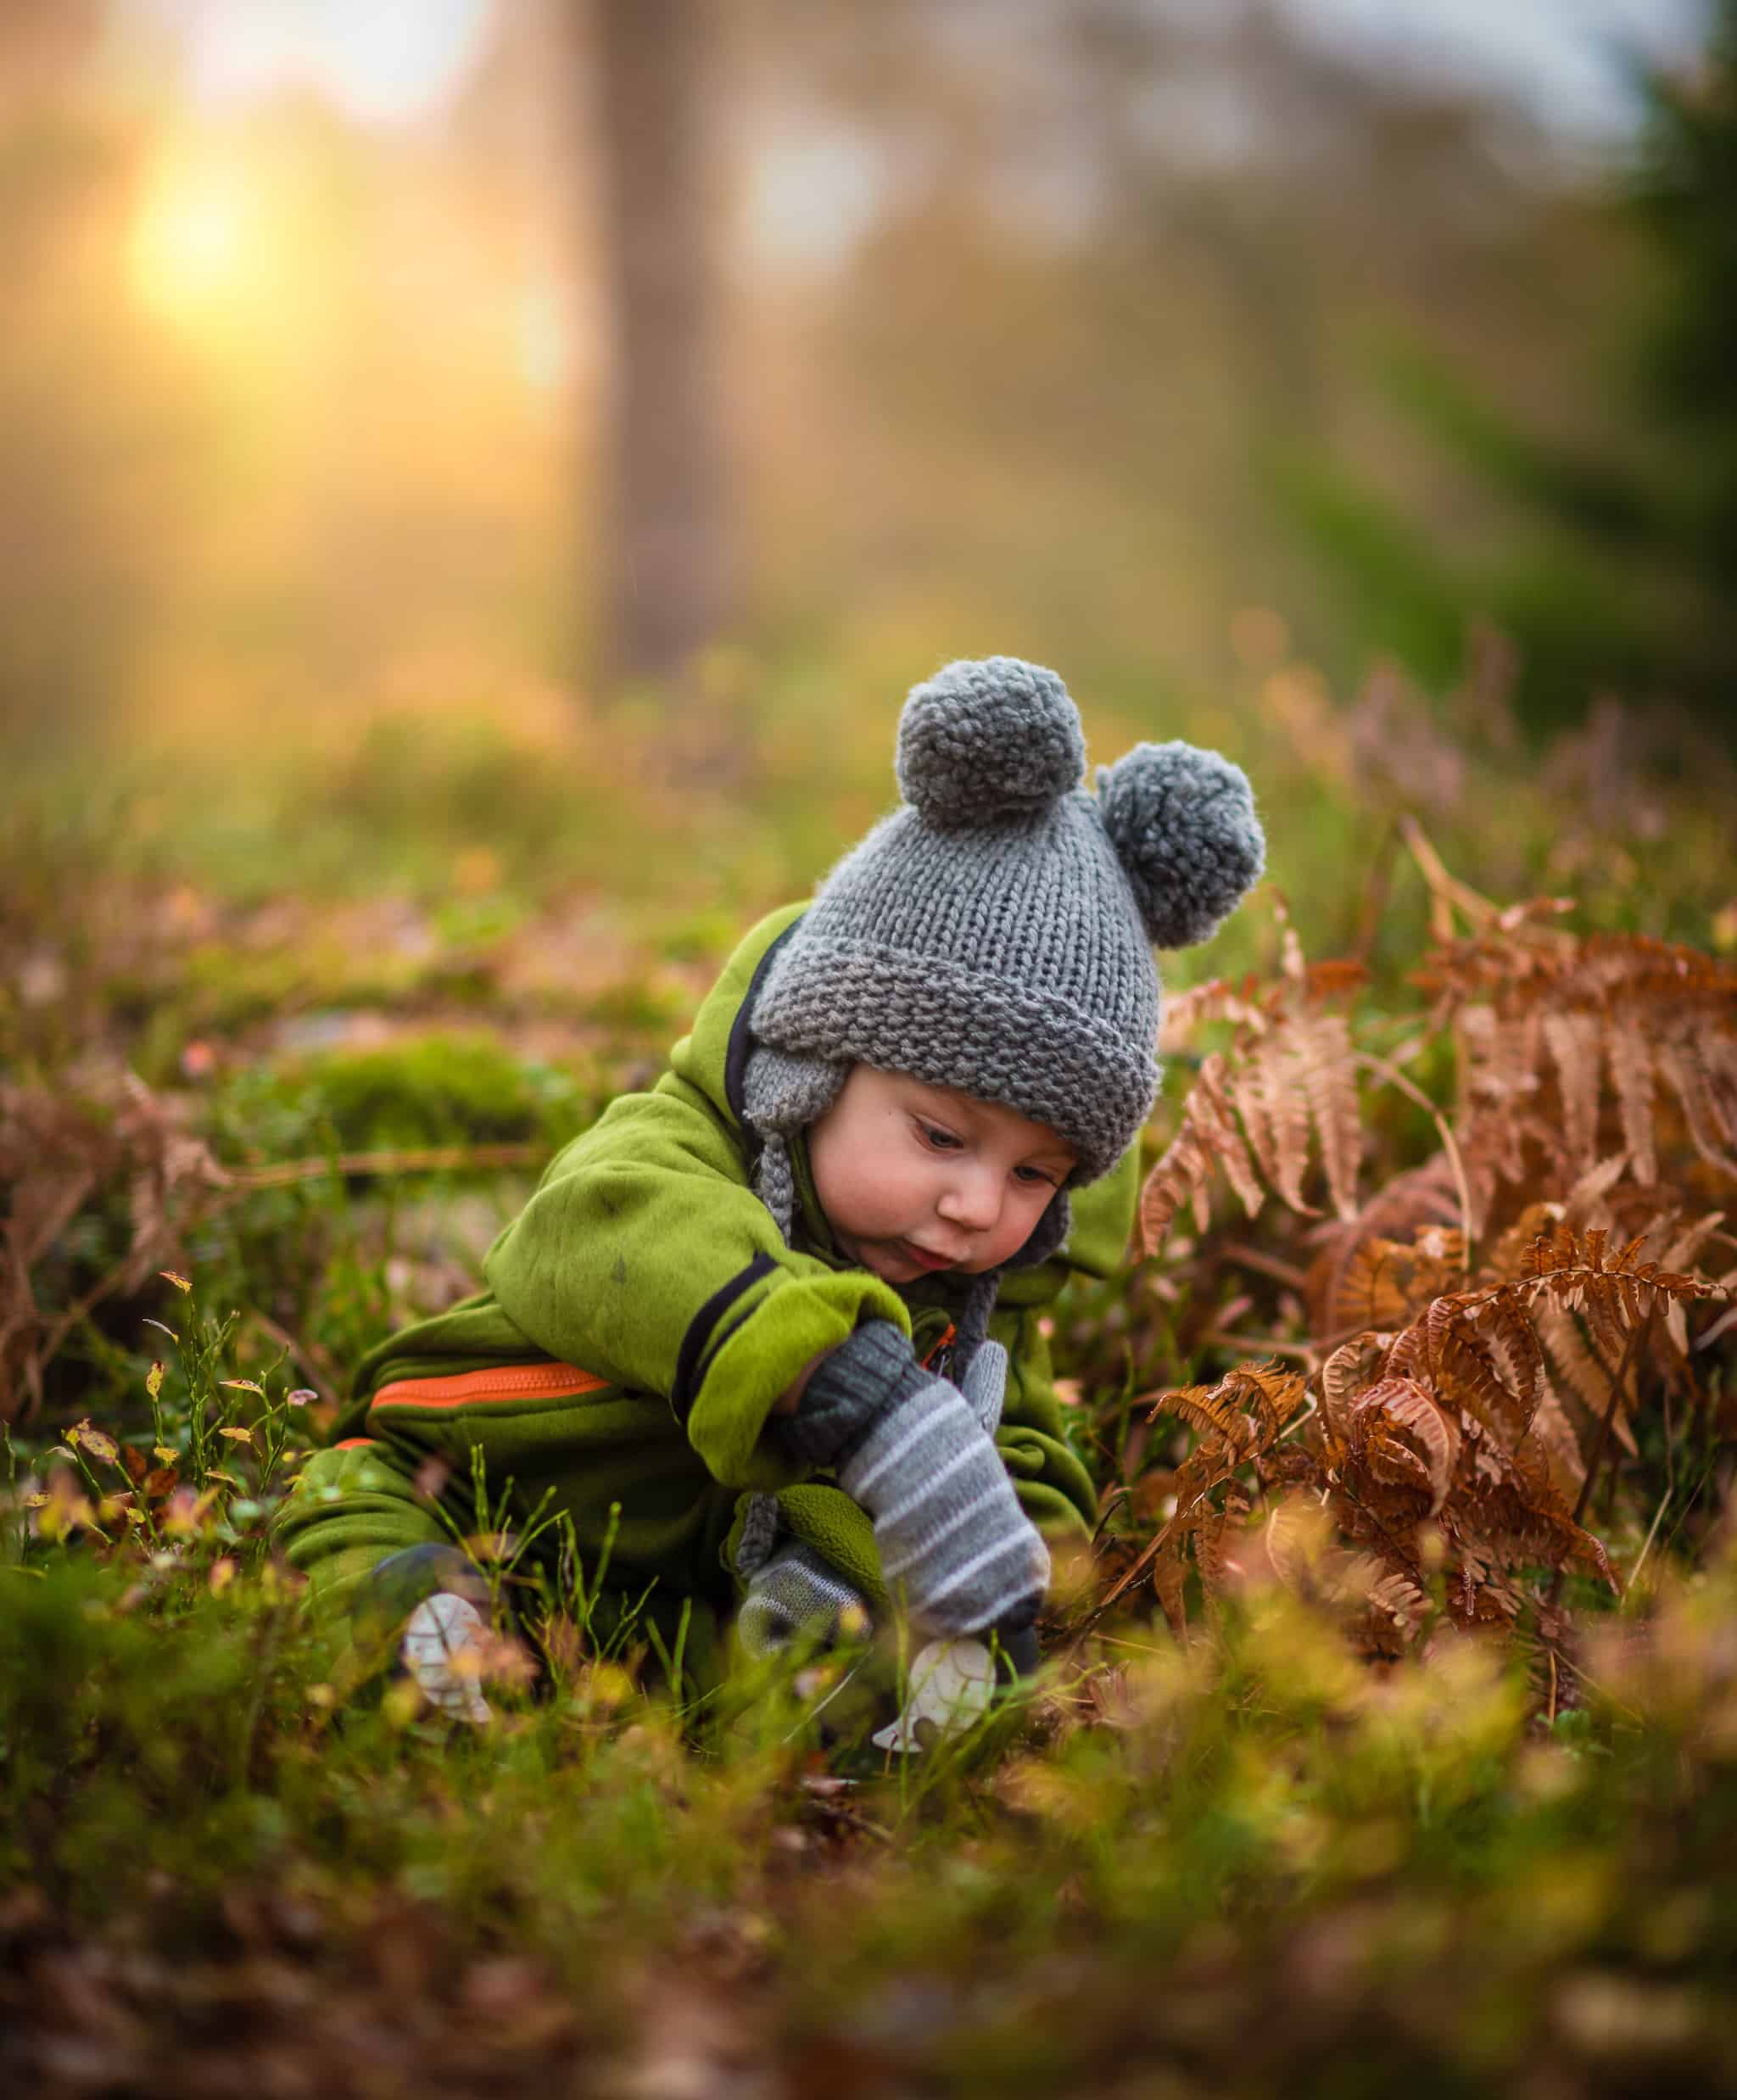 Toddler enjoying nature during fall